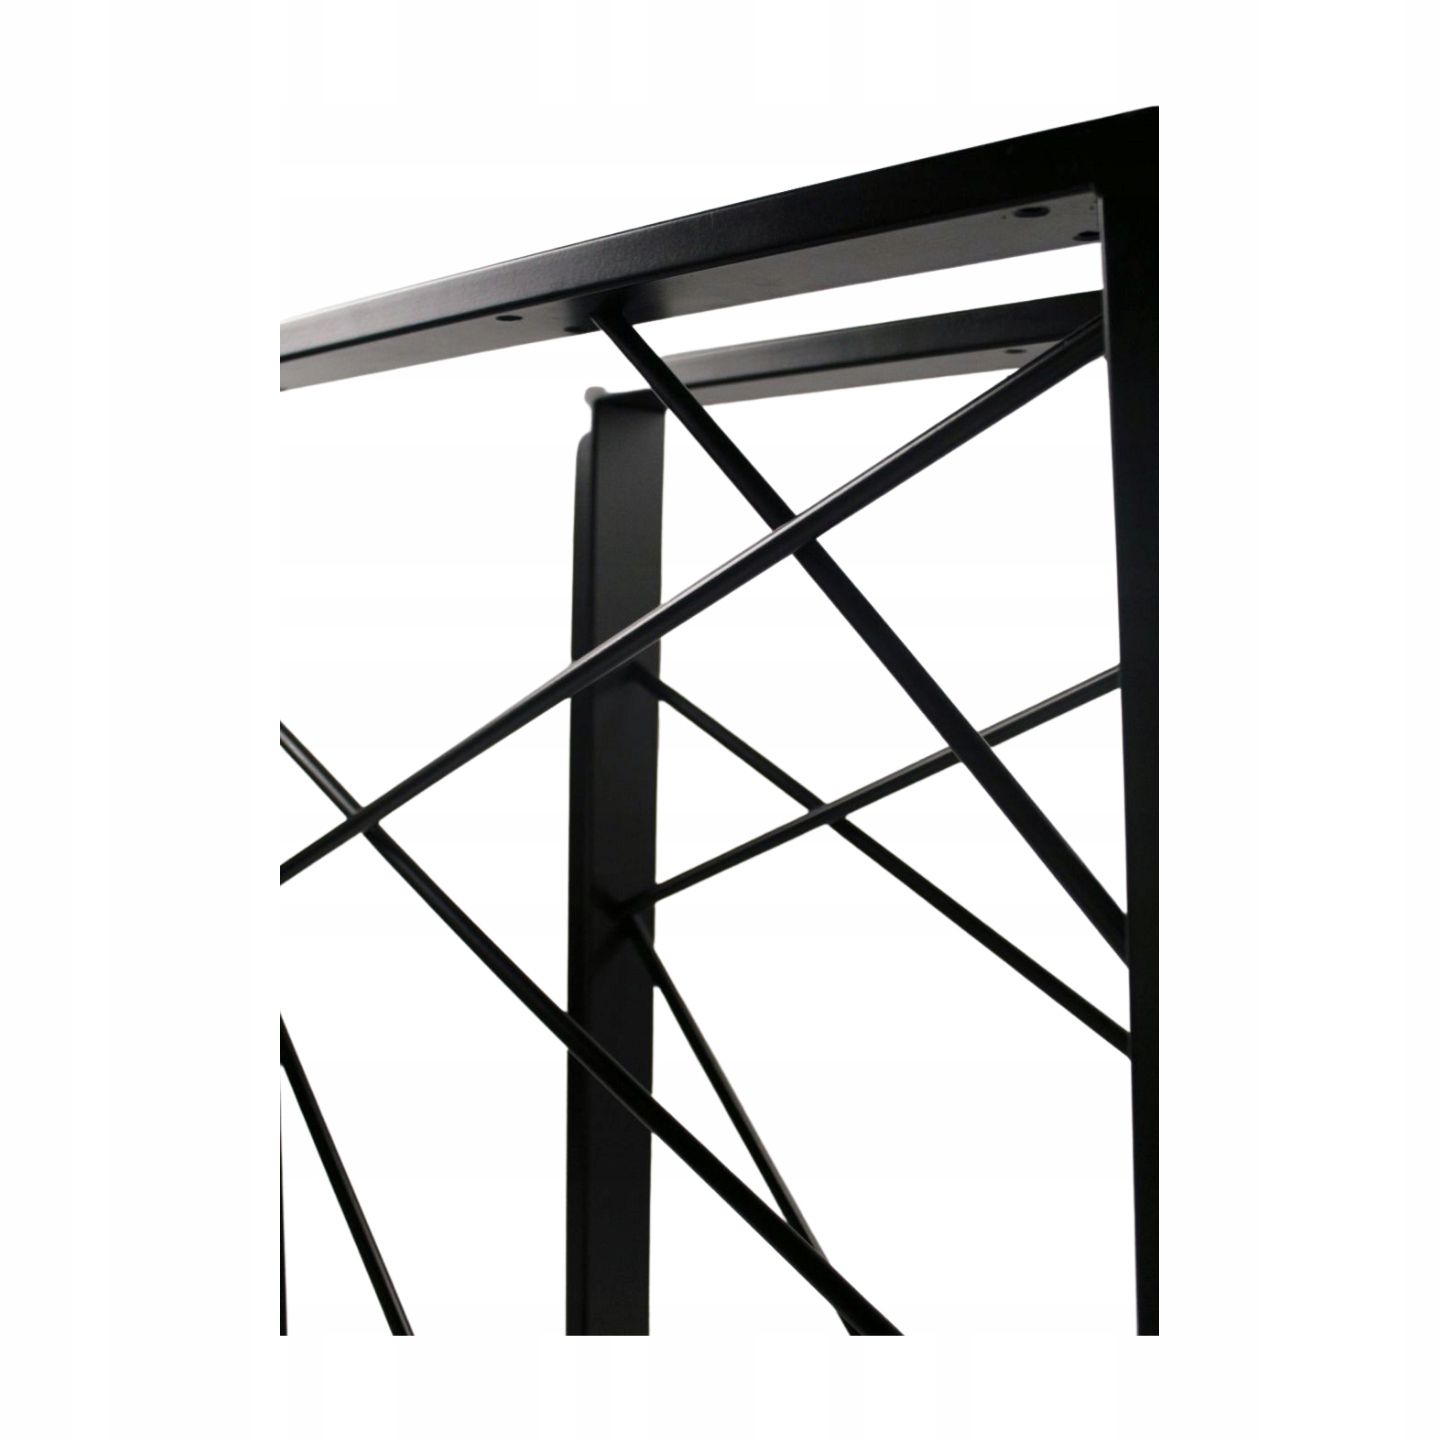 Nogi metalowe stelaż do stołu biurka Loft 60x72 cm Industrial Modern